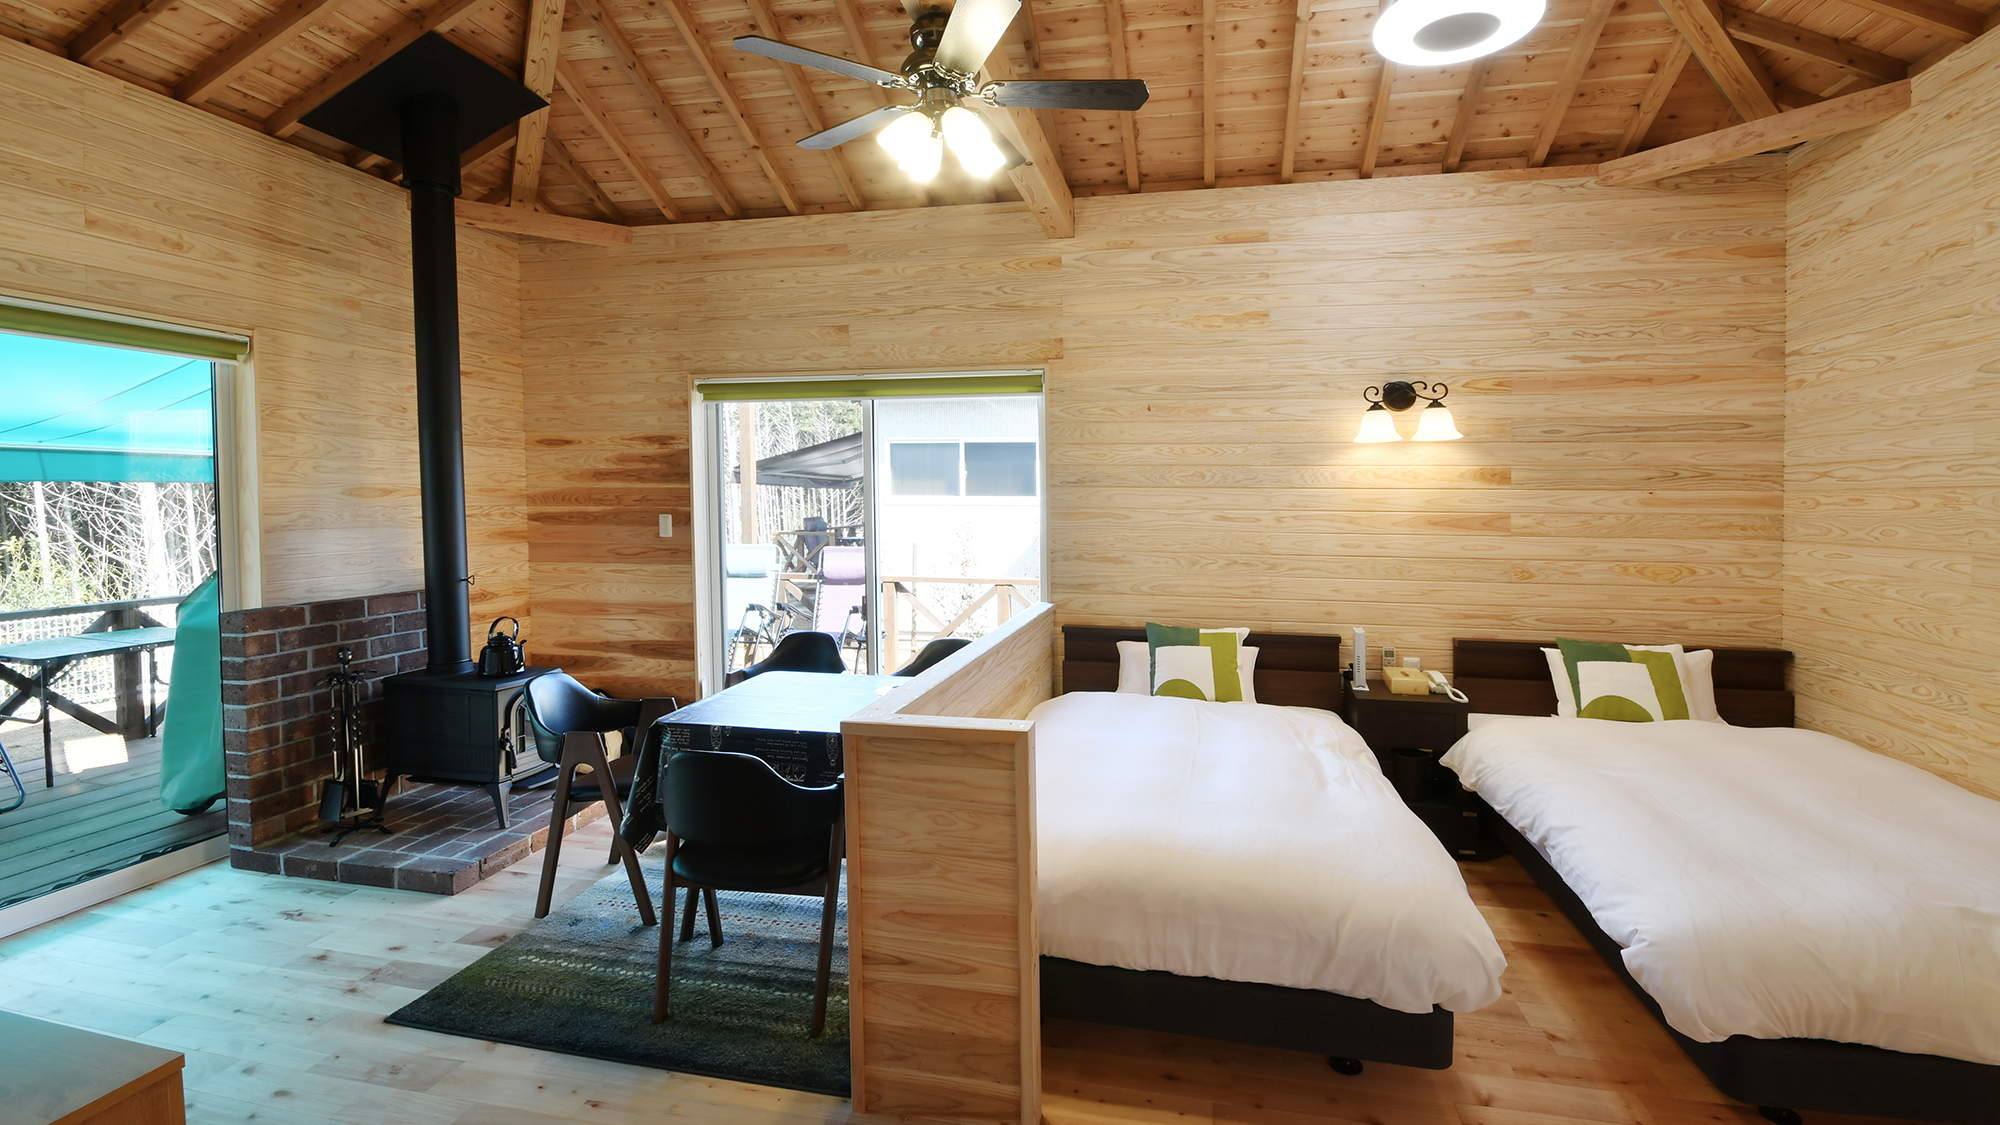 吹き抜け天井で開放感のある室内は天然木でログハウス風の壁。薪ストーブで贅沢な時間を過ごして下さい。